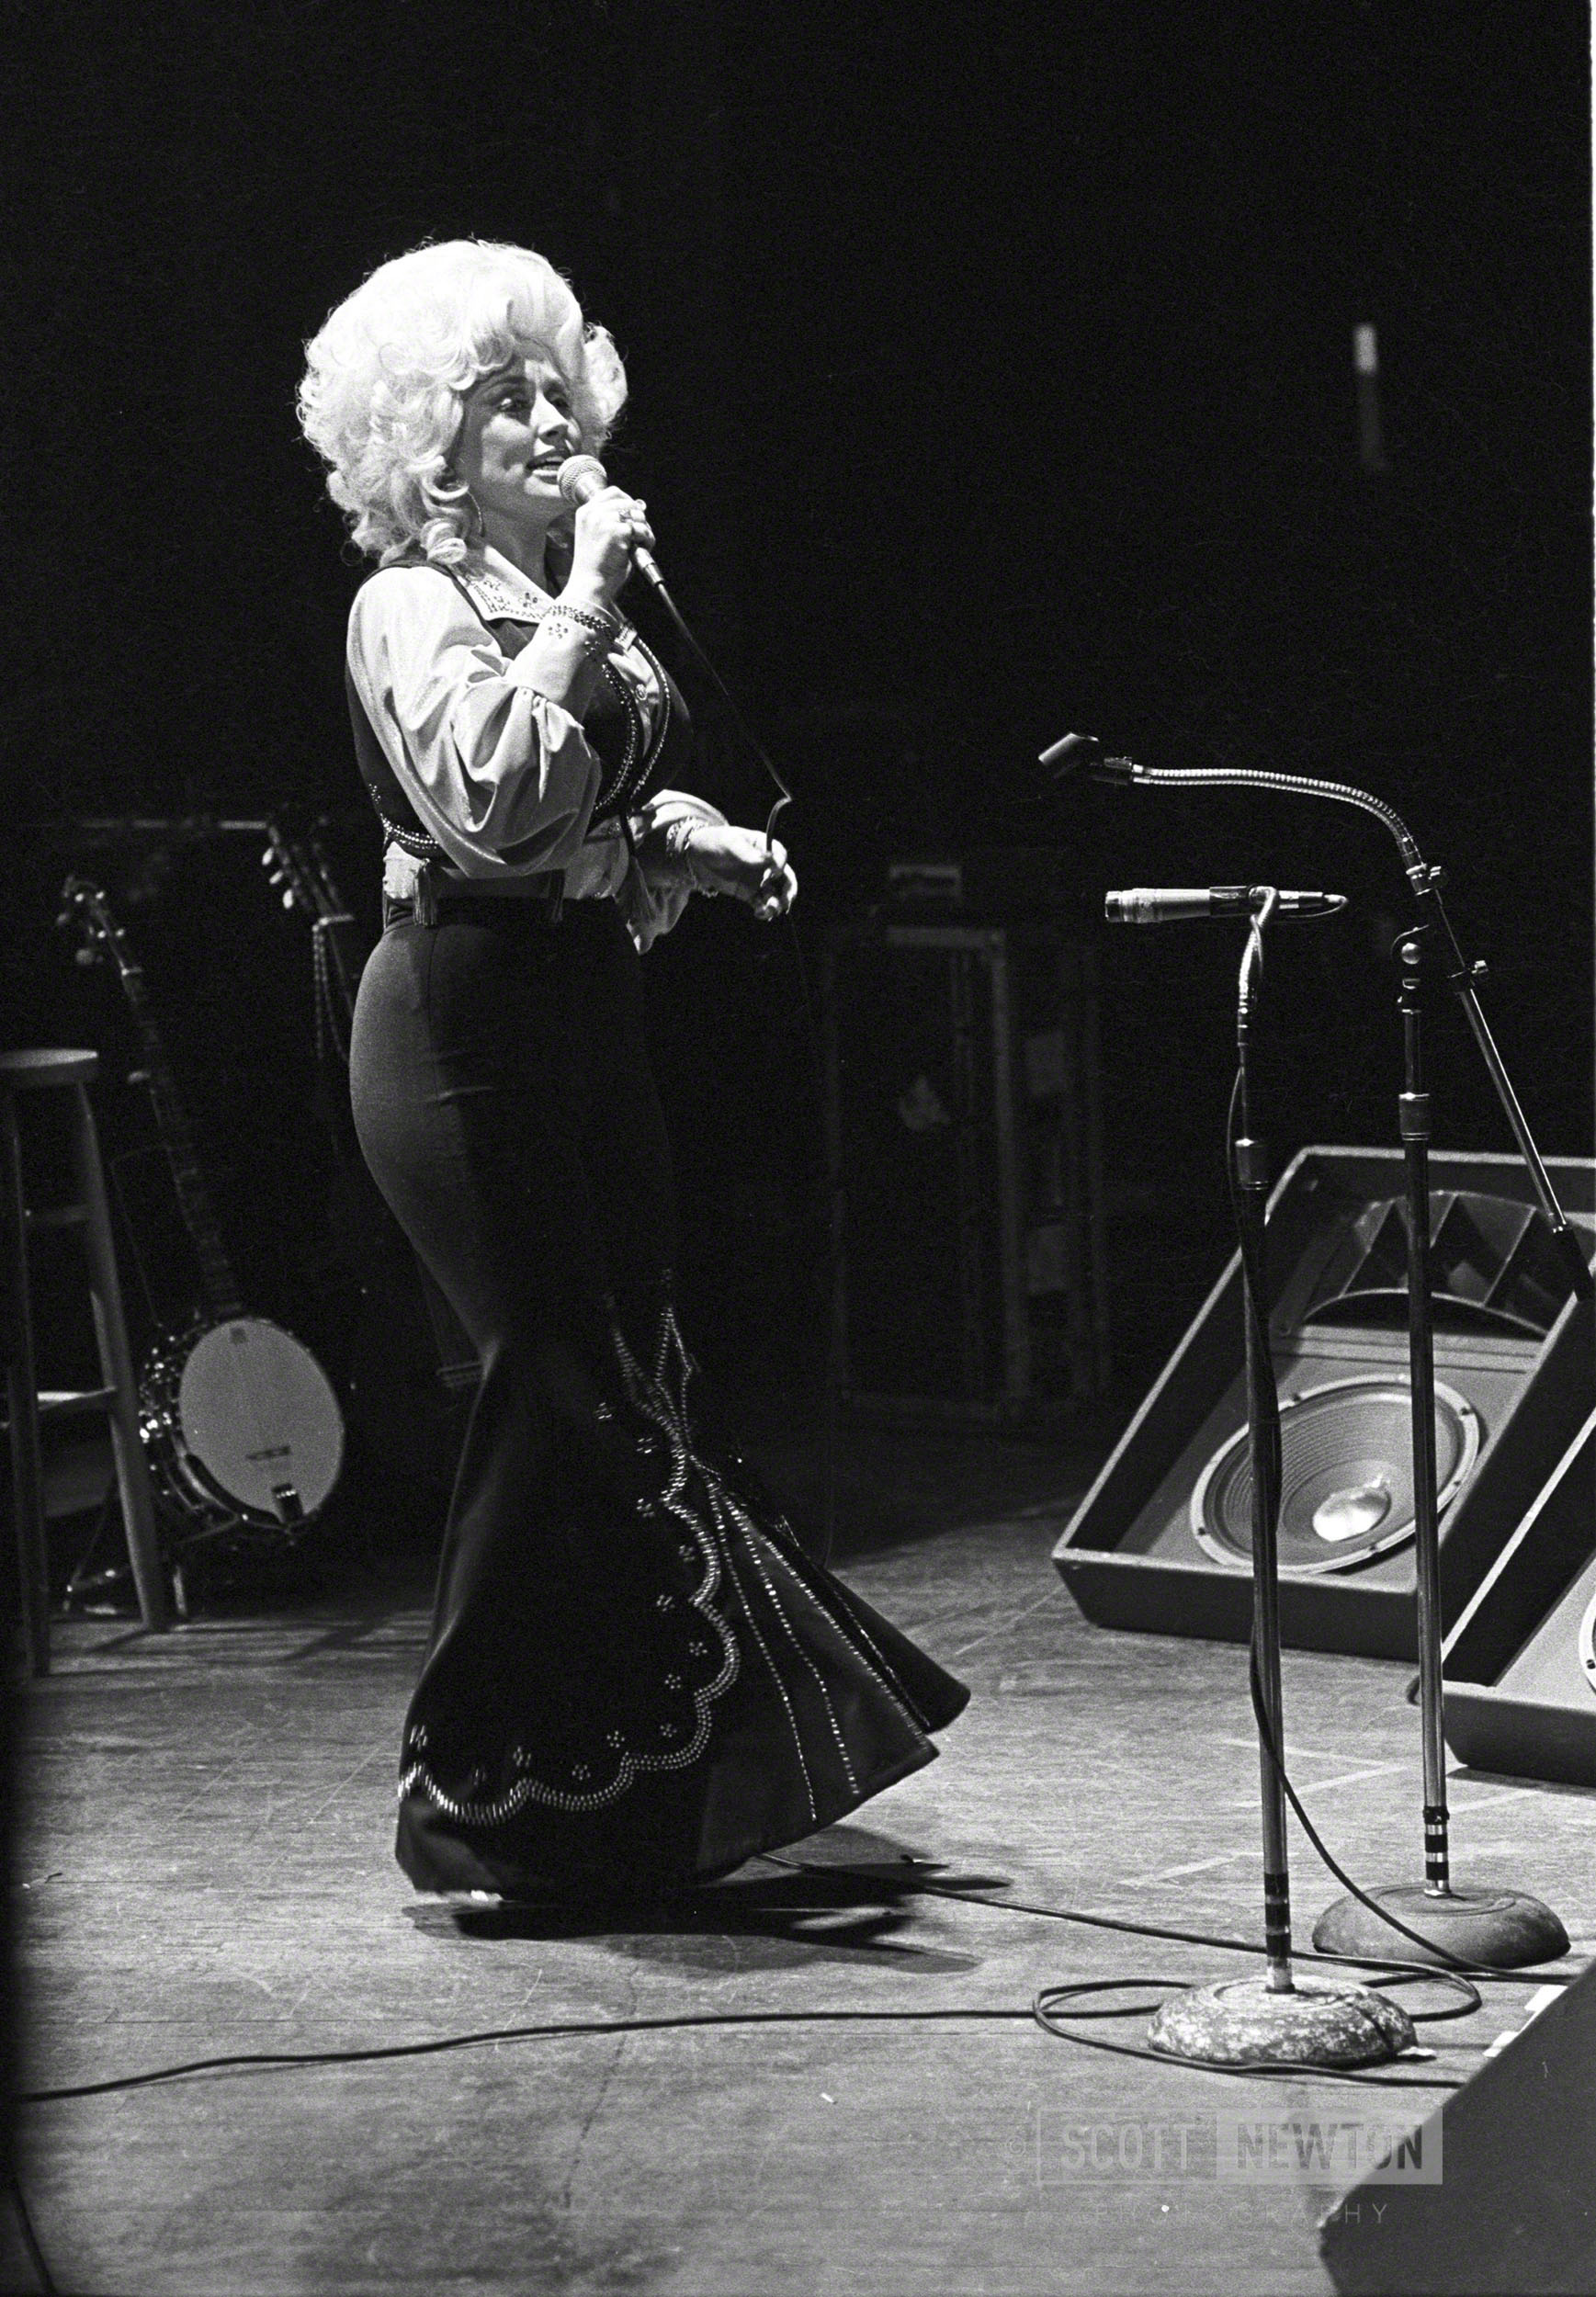 Dolly Parton @ venue in San Antonio 1977